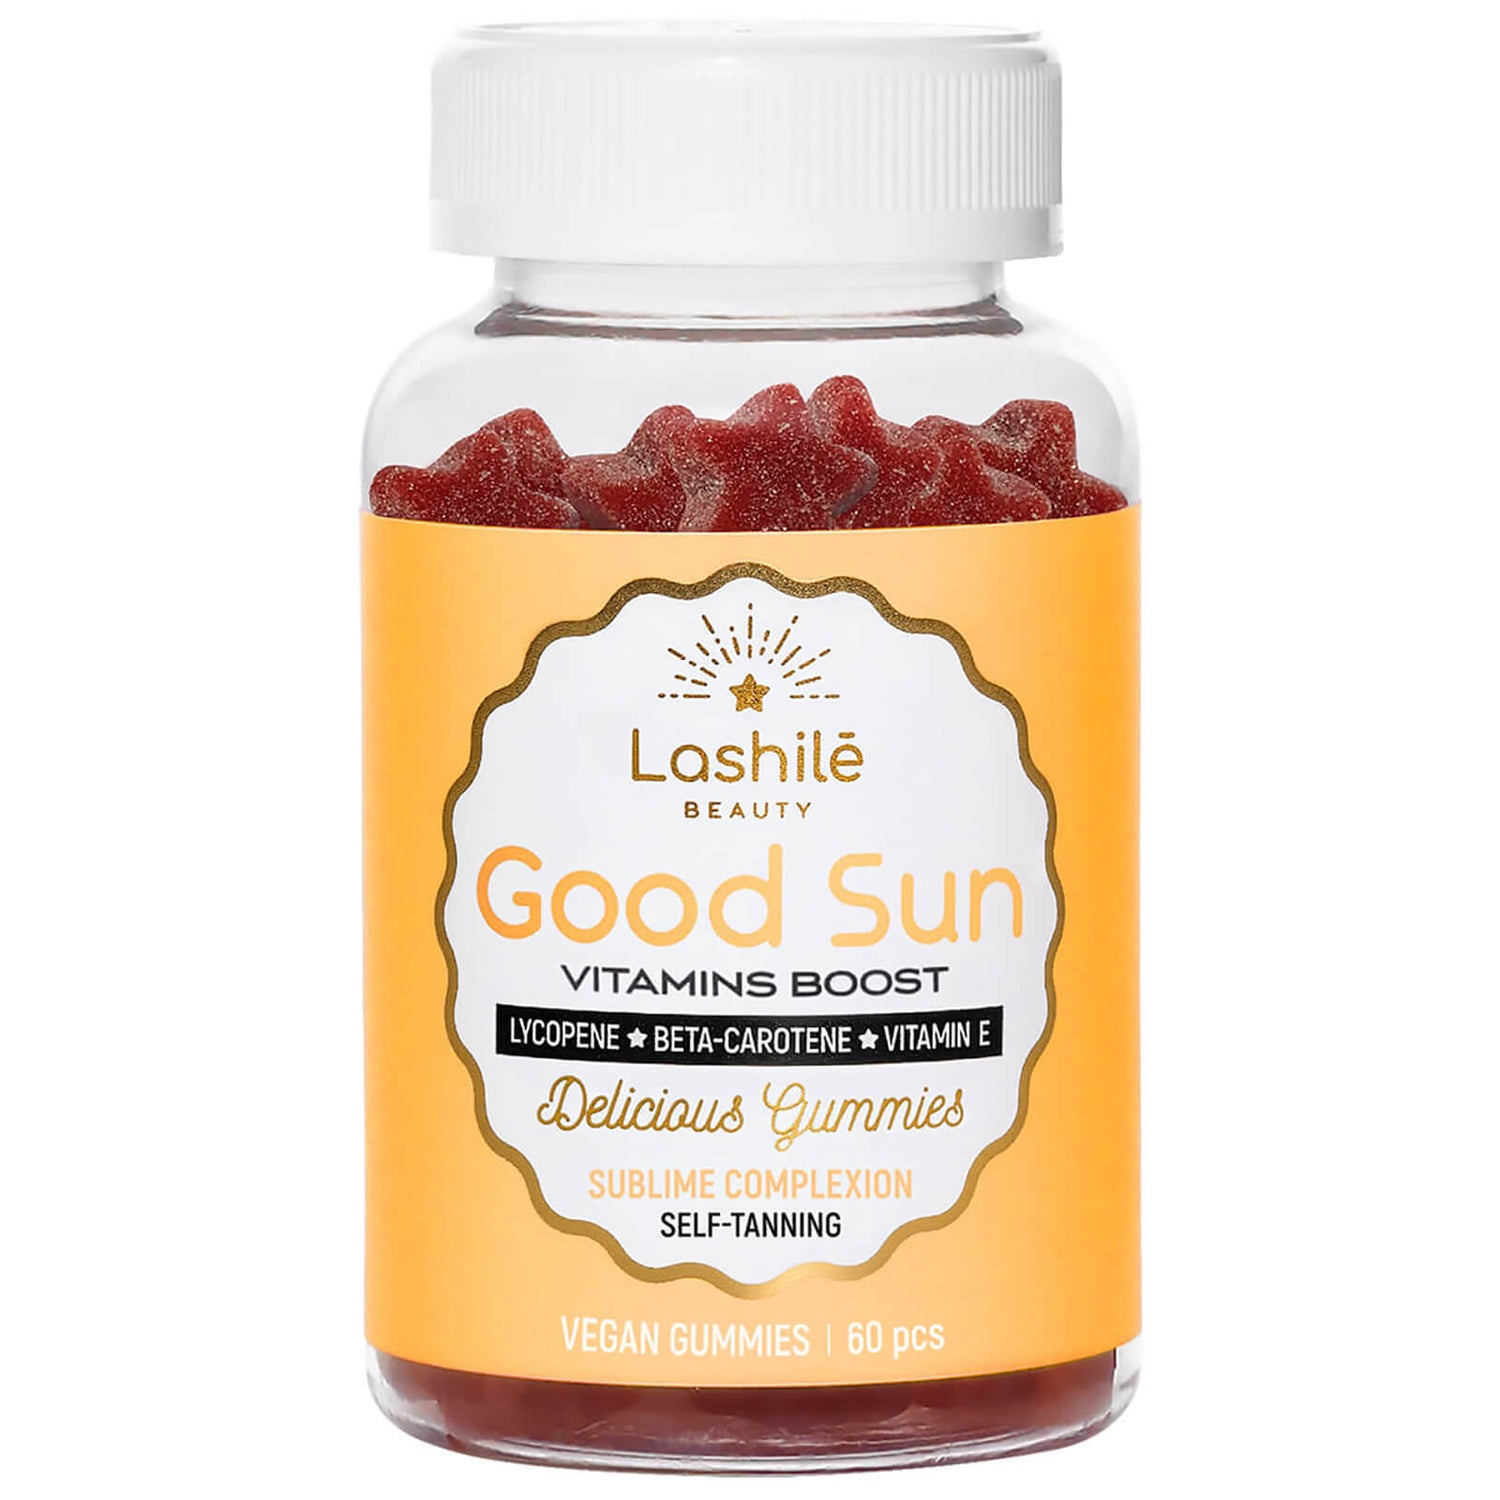 Boost vitamin. Tuscan Sun goods.